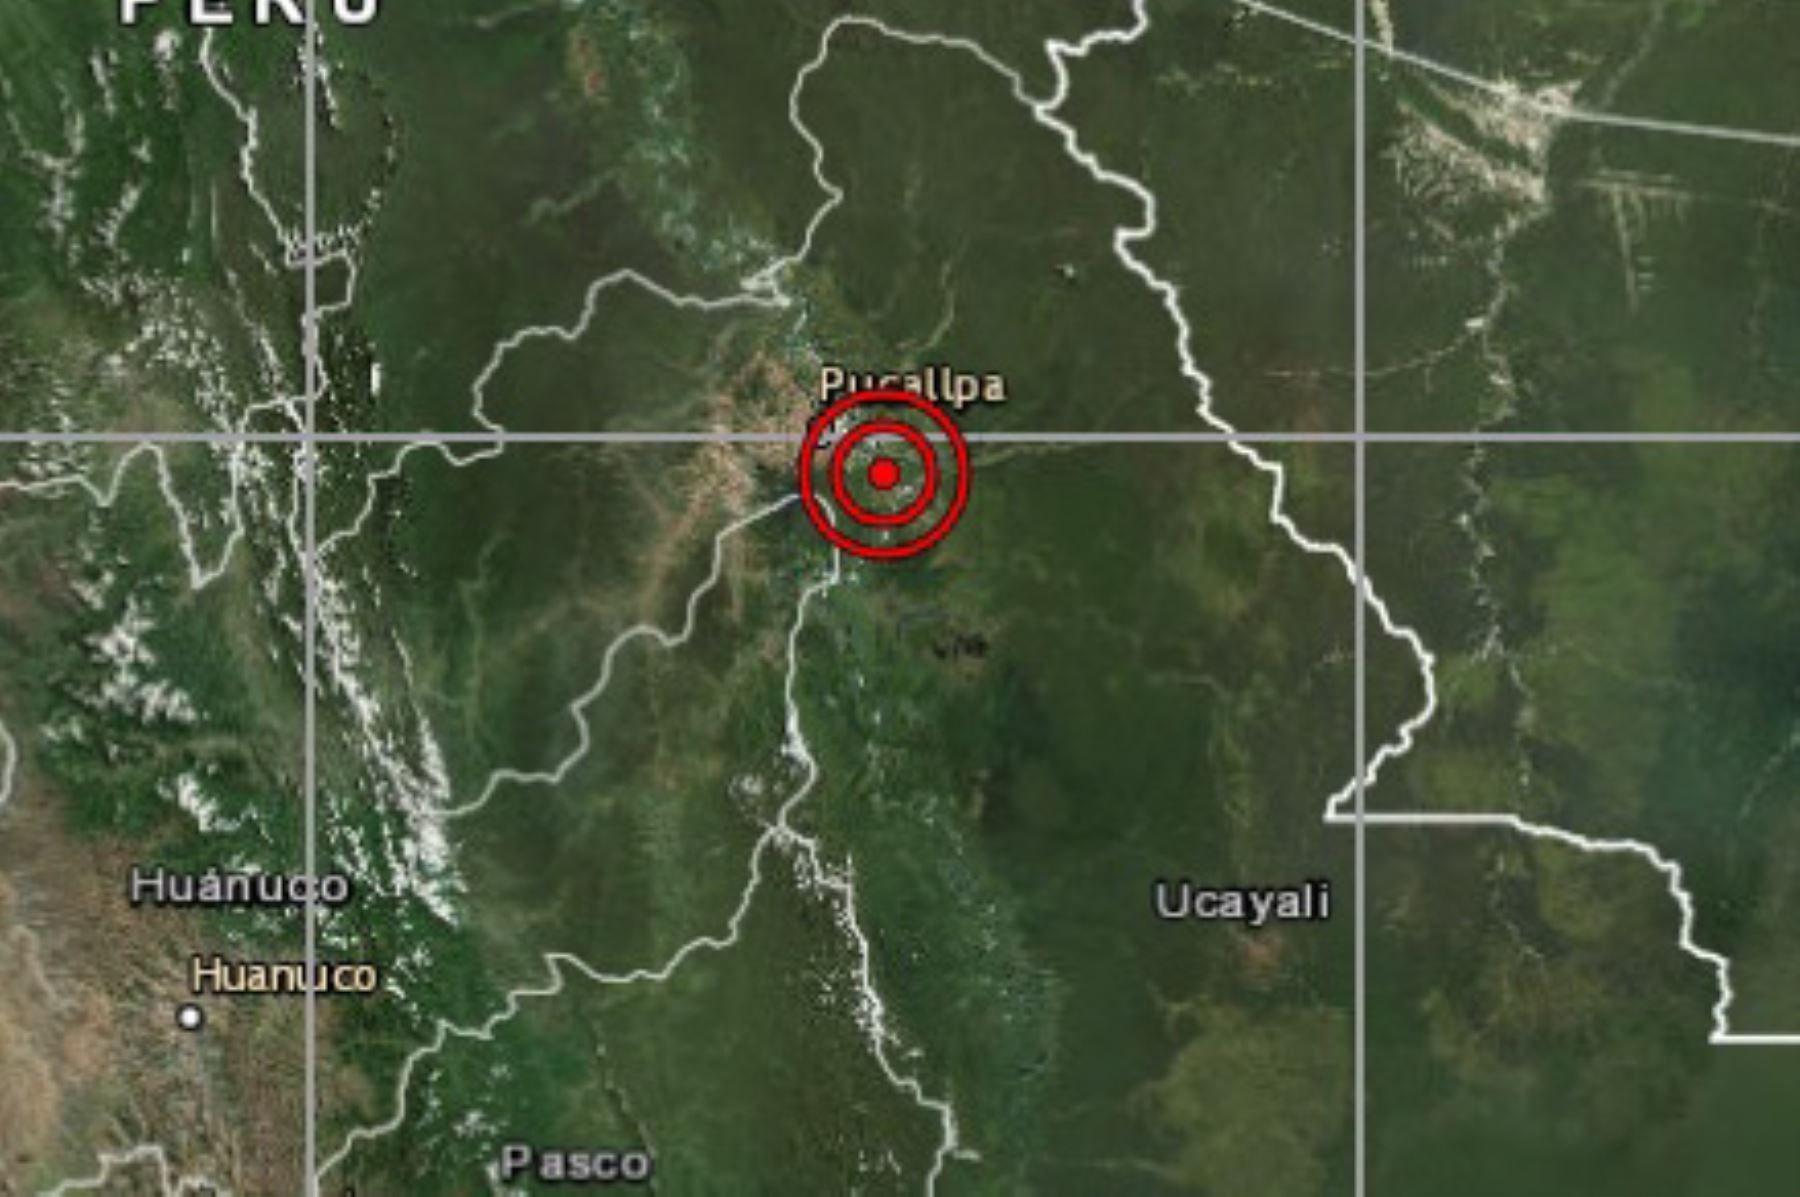 Un movimiento telúrico de magnitud 4.6 se registró esta madrugada a 21 kilómetros al sureste de Pucallpa, región Ucayali.